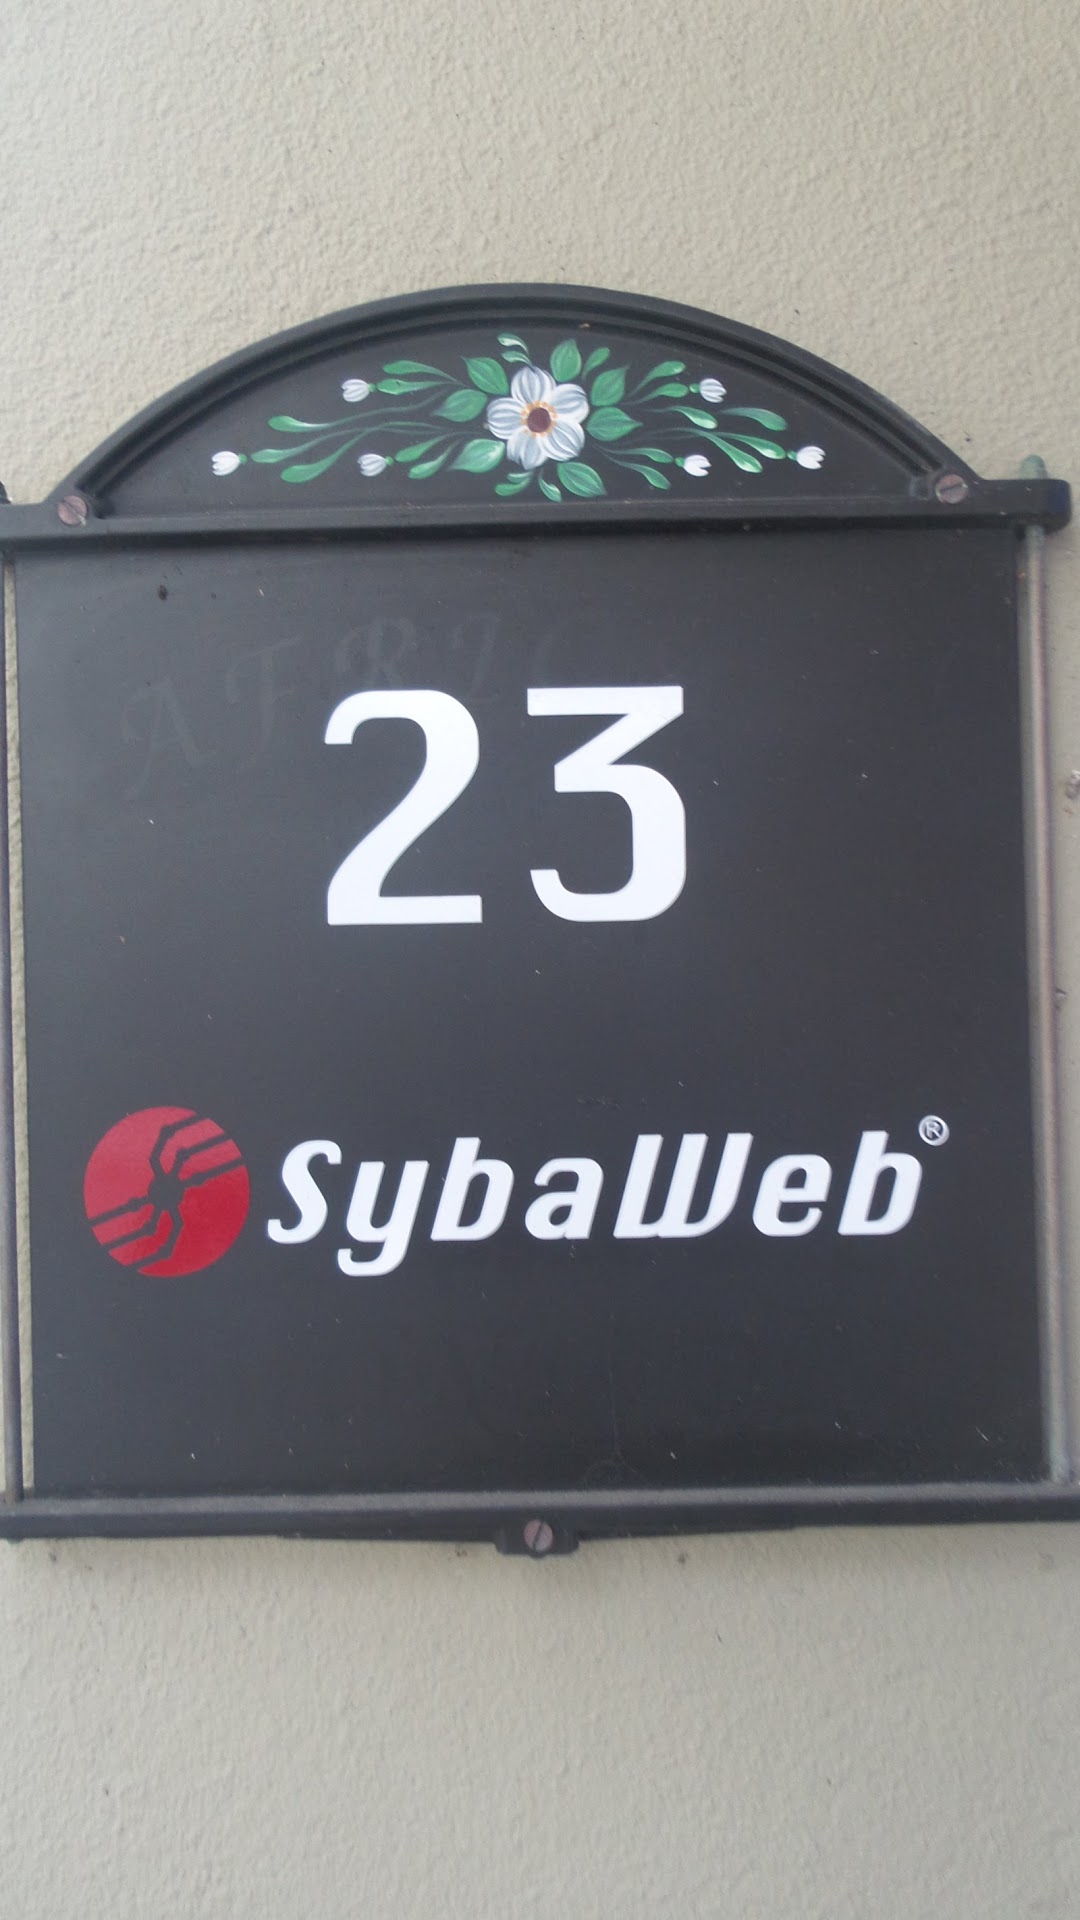 Sybaweb